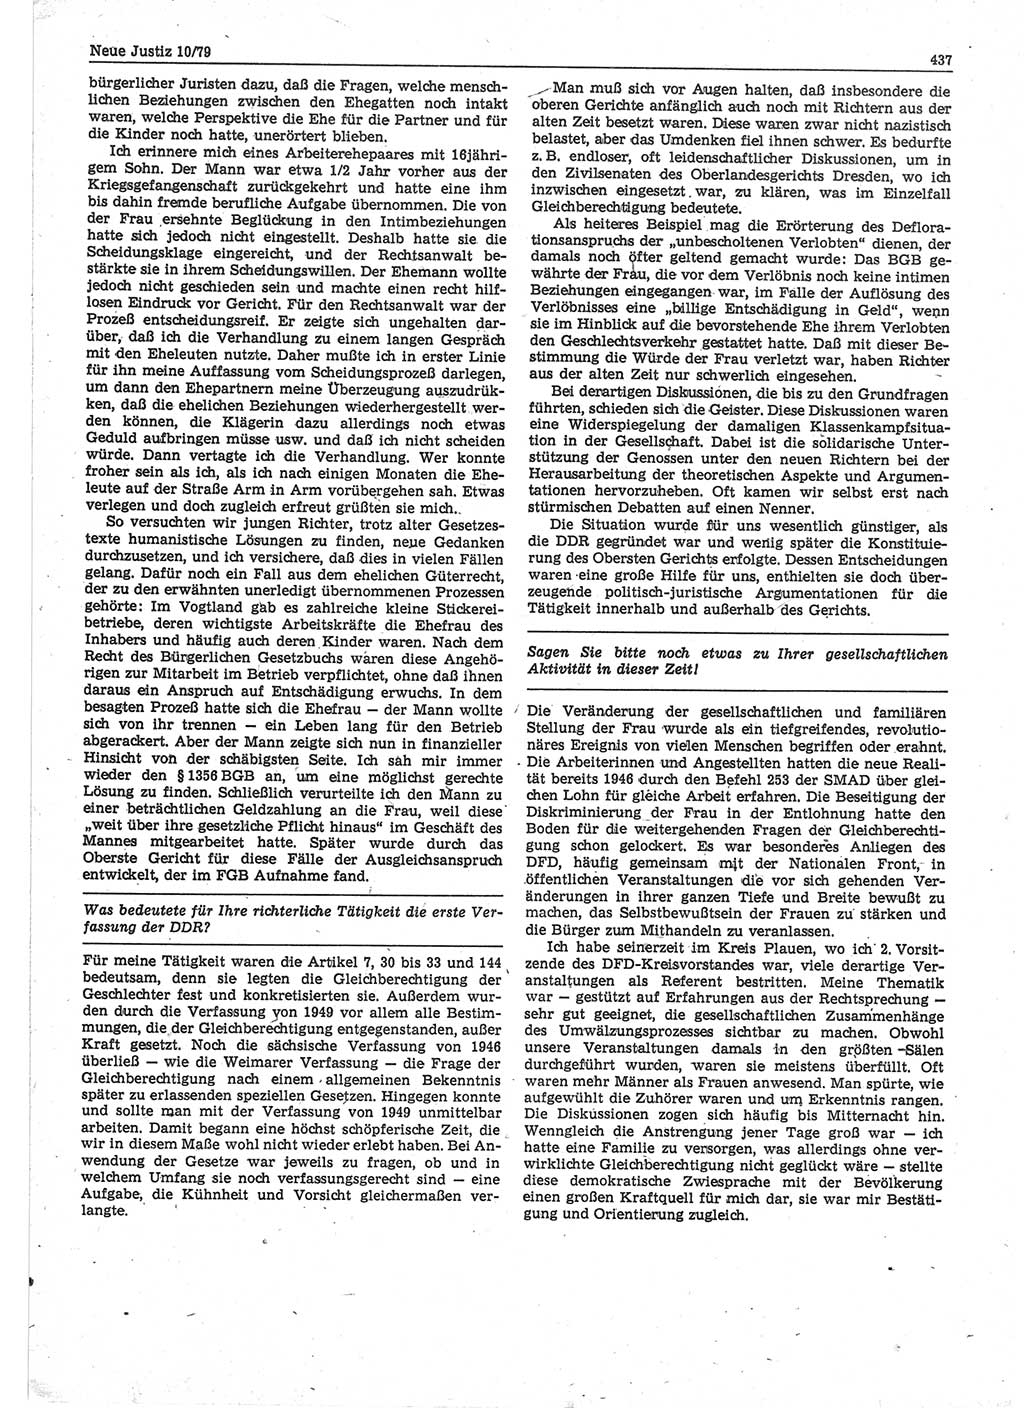 Neue Justiz (NJ), Zeitschrift für sozialistisches Recht und Gesetzlichkeit [Deutsche Demokratische Republik (DDR)], 33. Jahrgang 1979, Seite 437 (NJ DDR 1979, S. 437)